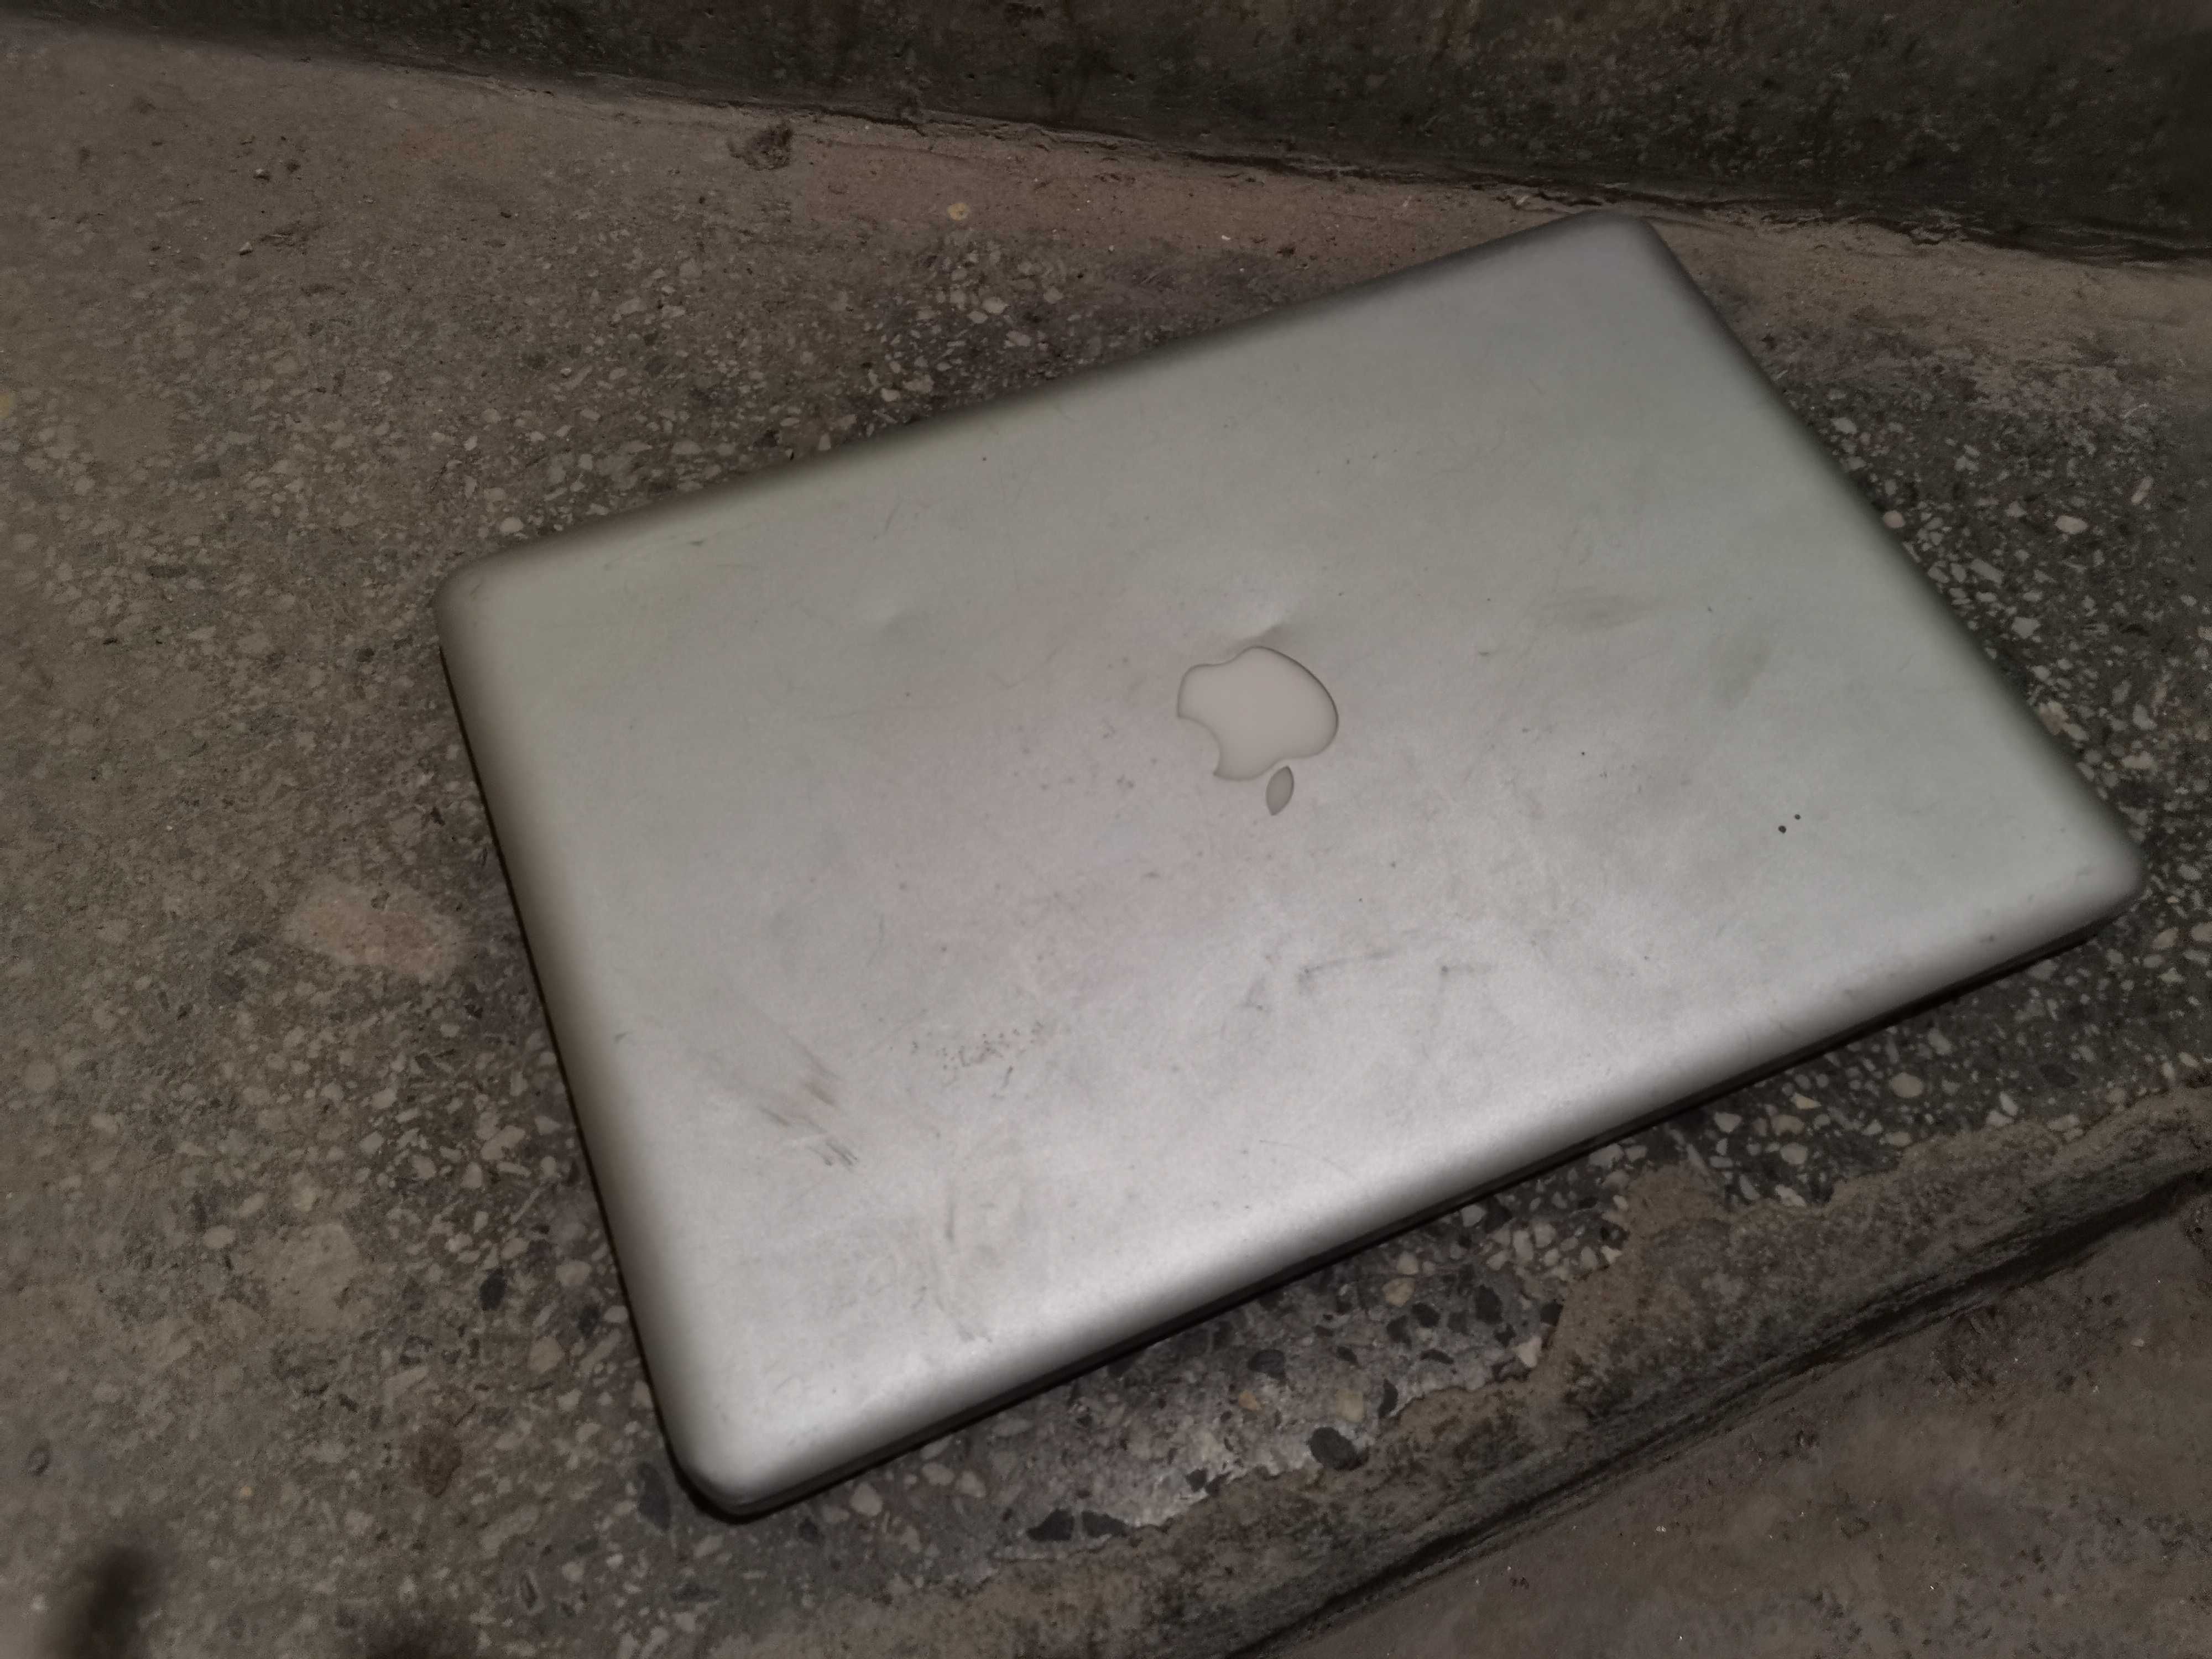 Apple - macbook pro (2009)